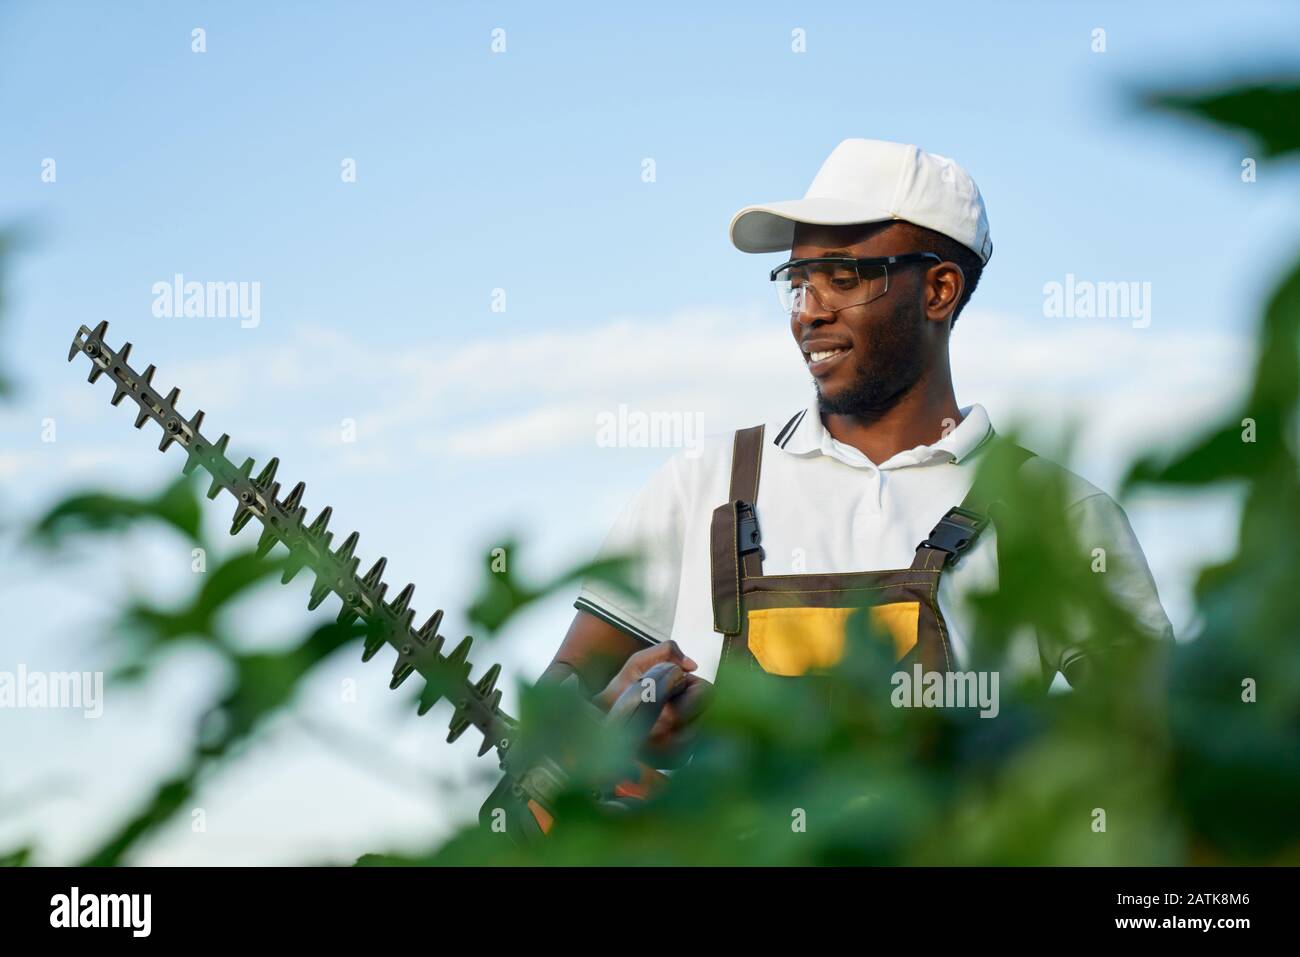 Heureux afro américain homme dans l'ensemble, chapeau d'été blanc et lunettes de protection debout près des buissons verts avec haies à essence. Jardinier masculin en uniforme travaillant dans le jardin avec un équipement spécial Banque D'Images